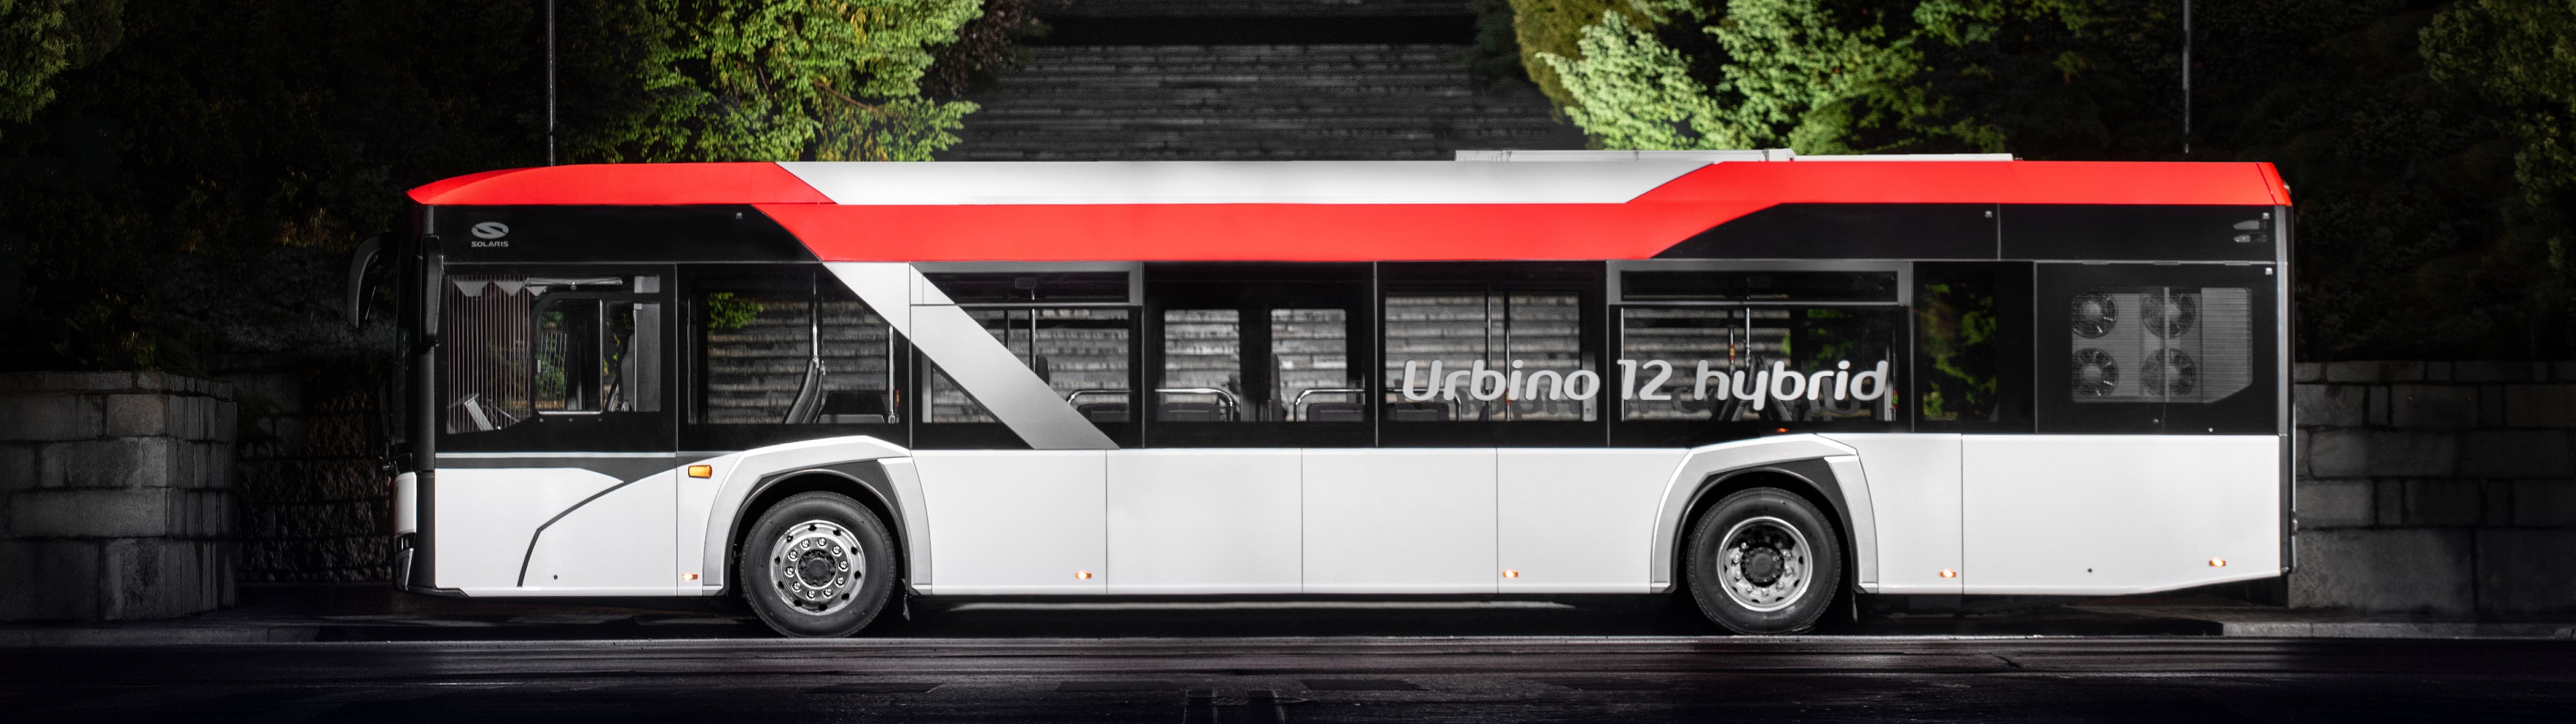 161 hybrid Solaris buses to go to Wallonia